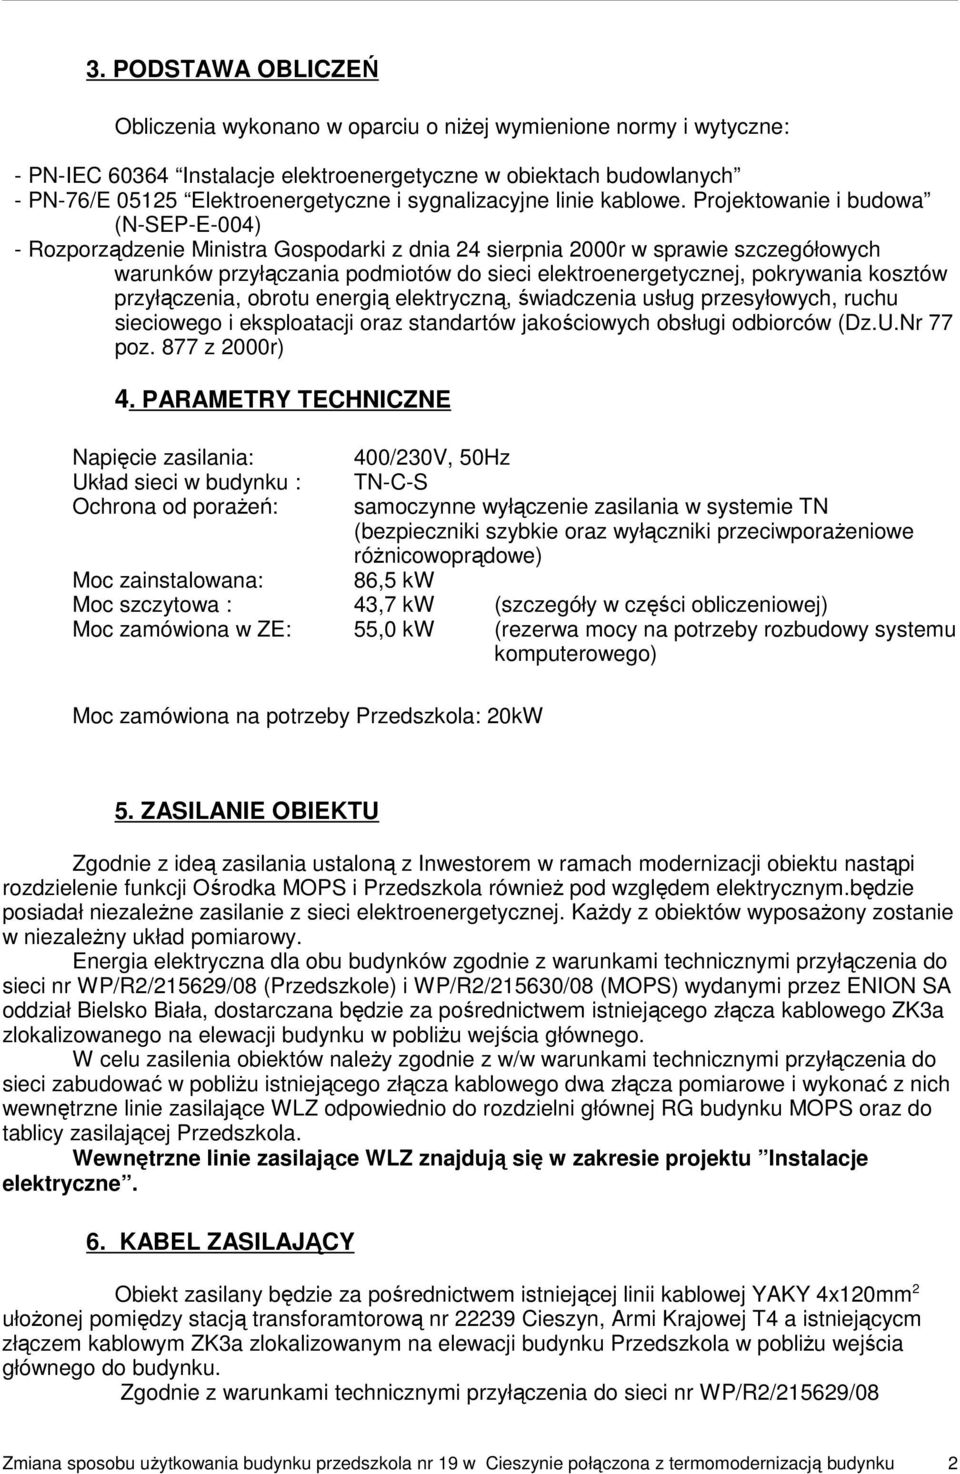 Projektowanie i budowa (N-SEP-E-004) - Rozporządzenie Ministra Gospodarki z dnia 24 sierpnia 2000r w sprawie szczegółowych warunków przyłączania podmiotów do sieci elektroenergetycznej, pokrywania